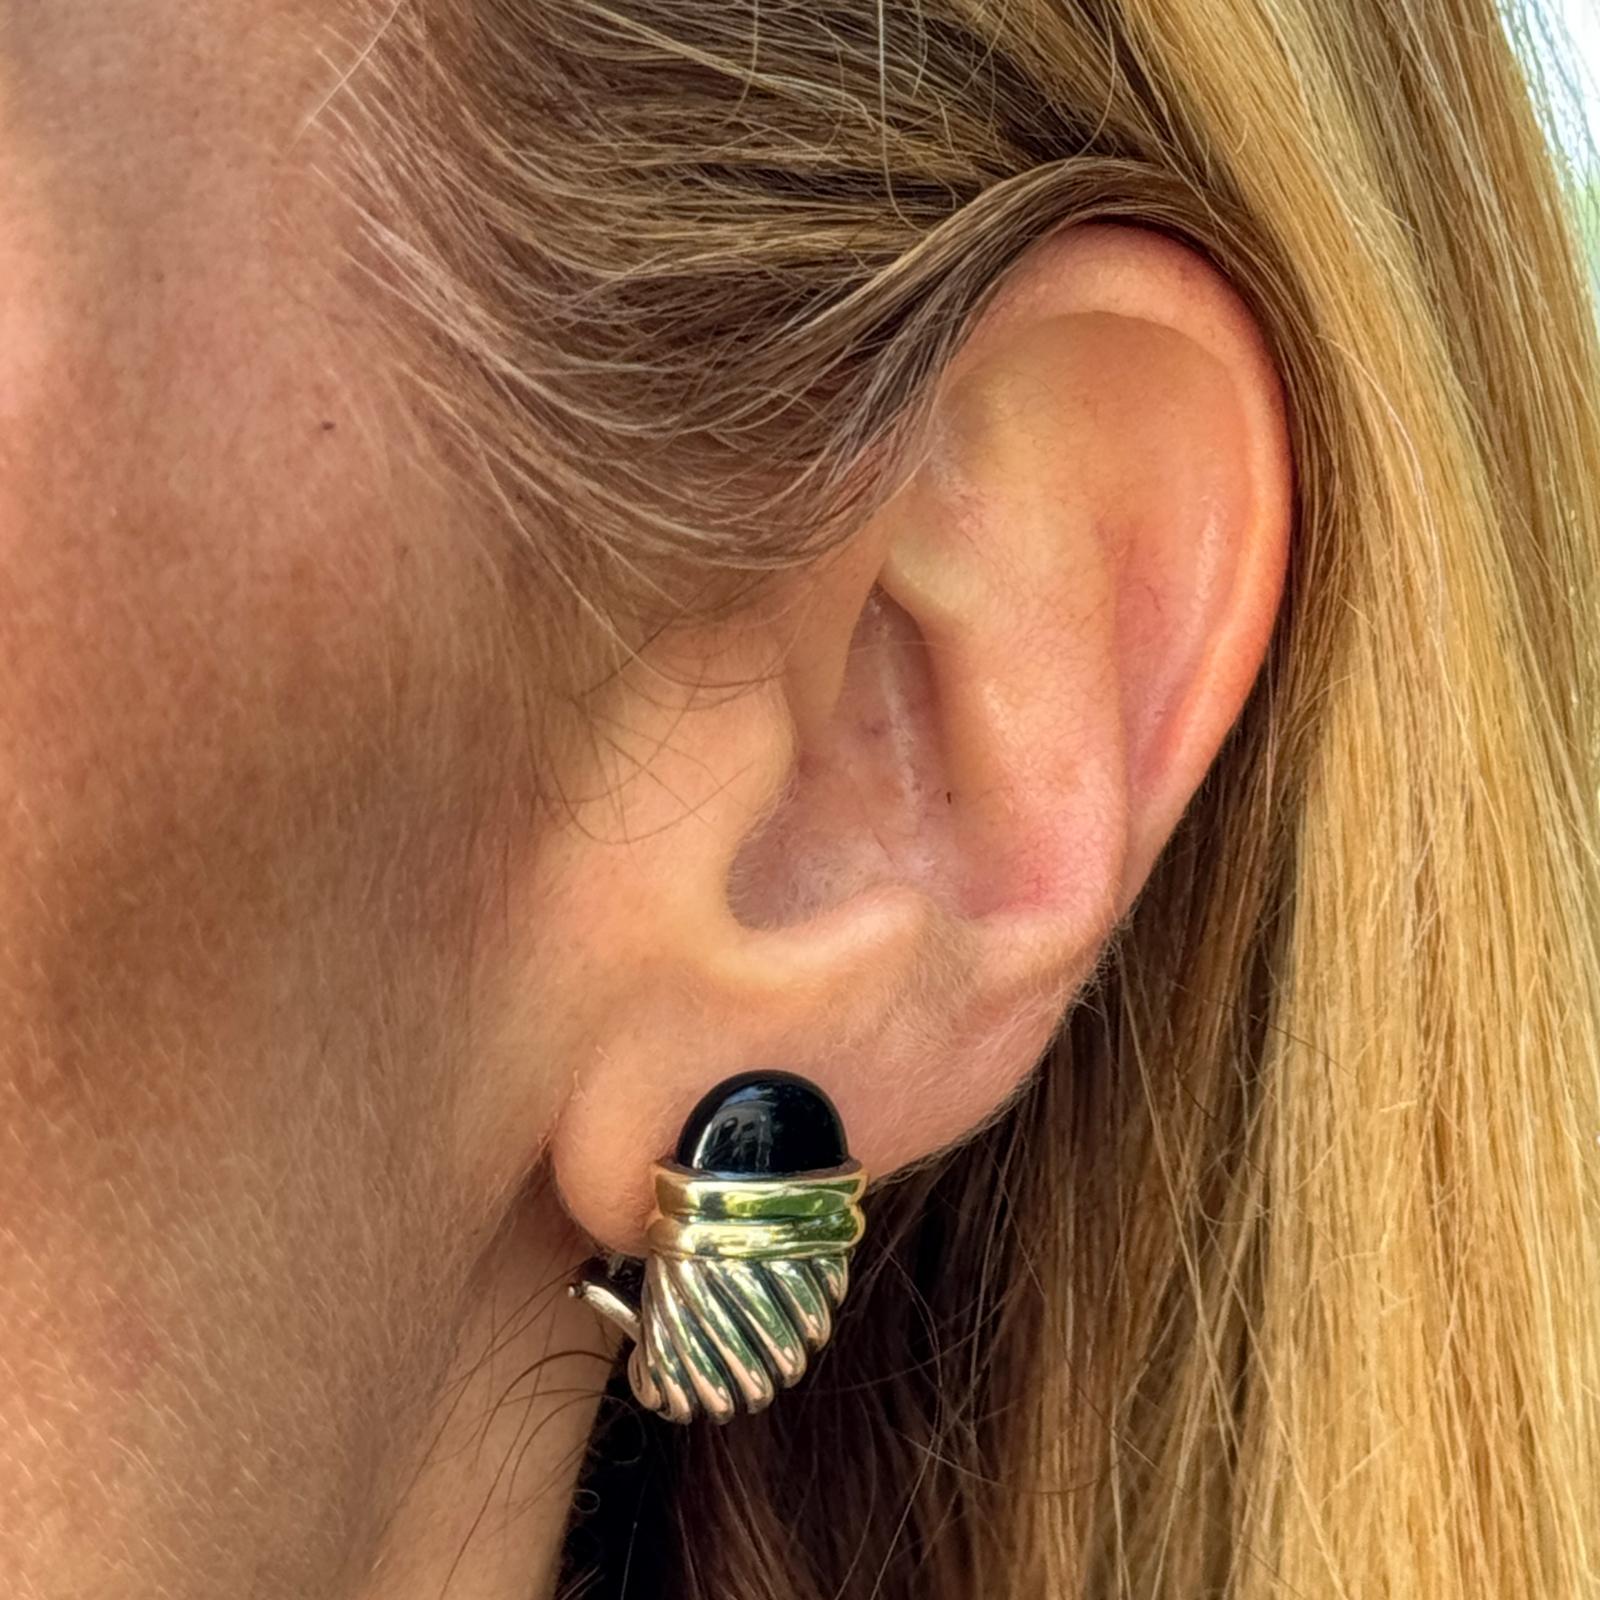 David Yurman Onyx Shrimp Kabel-Ohrringe aus Sterlingsilber und 14 Karat Gelbgold. Die Ohrringe sind ca. 12 x 20 mm groß, haben einen Hebelverschluss und sind mit DY 925 14K signiert. Gewicht: 10,4 Gramm.